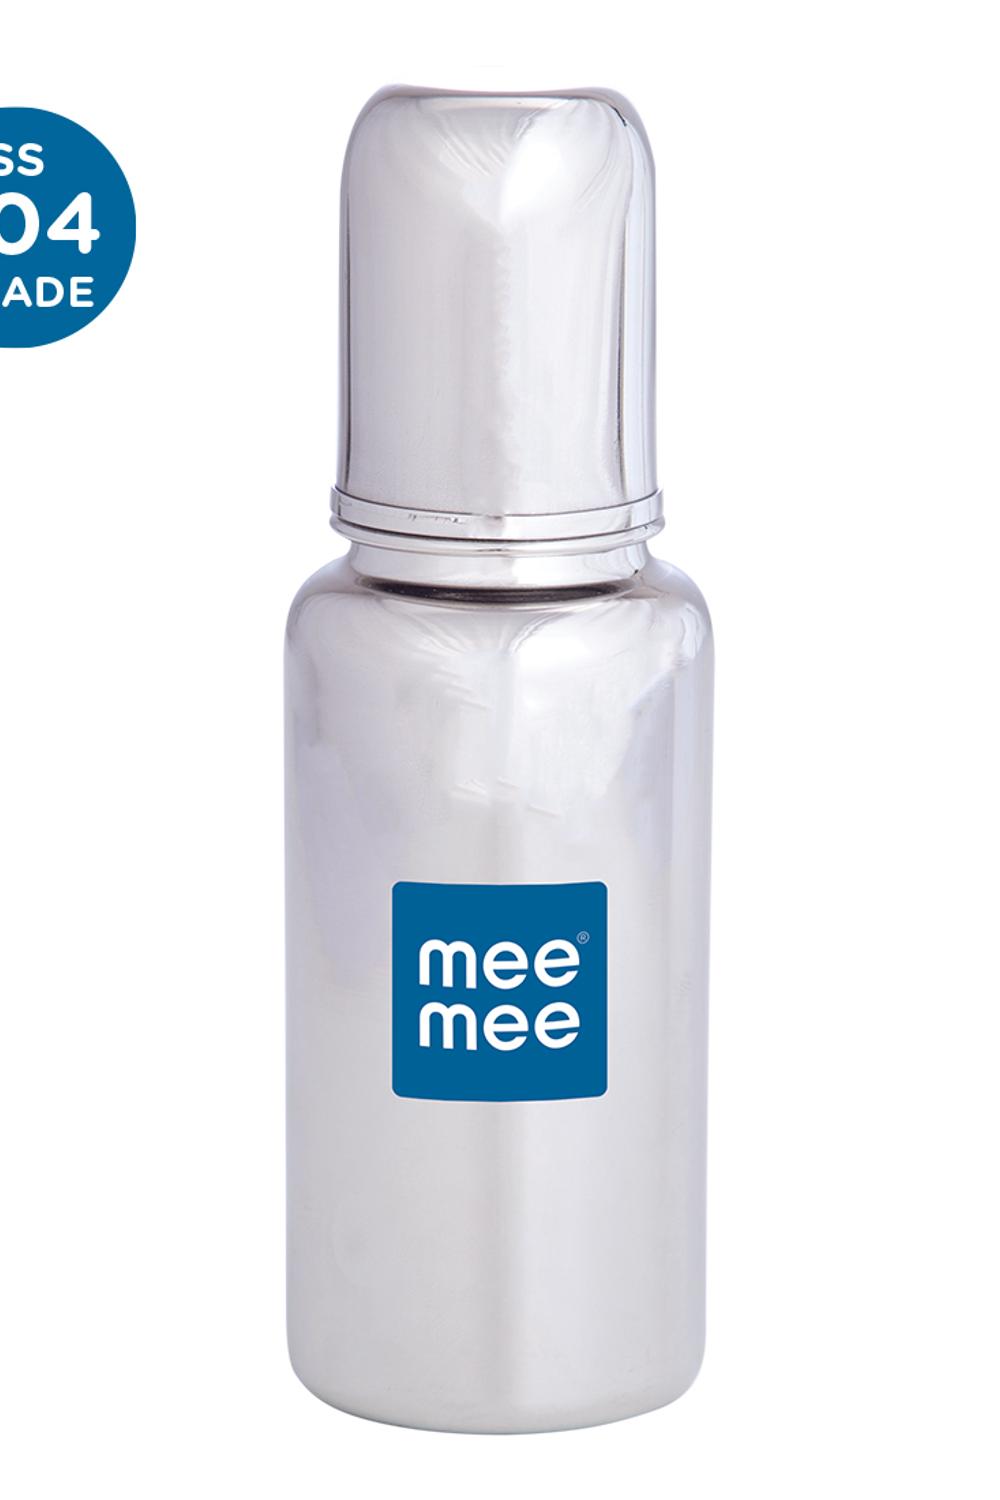 Mee Mee Premium Steel Feeding Bottle (240 ml)